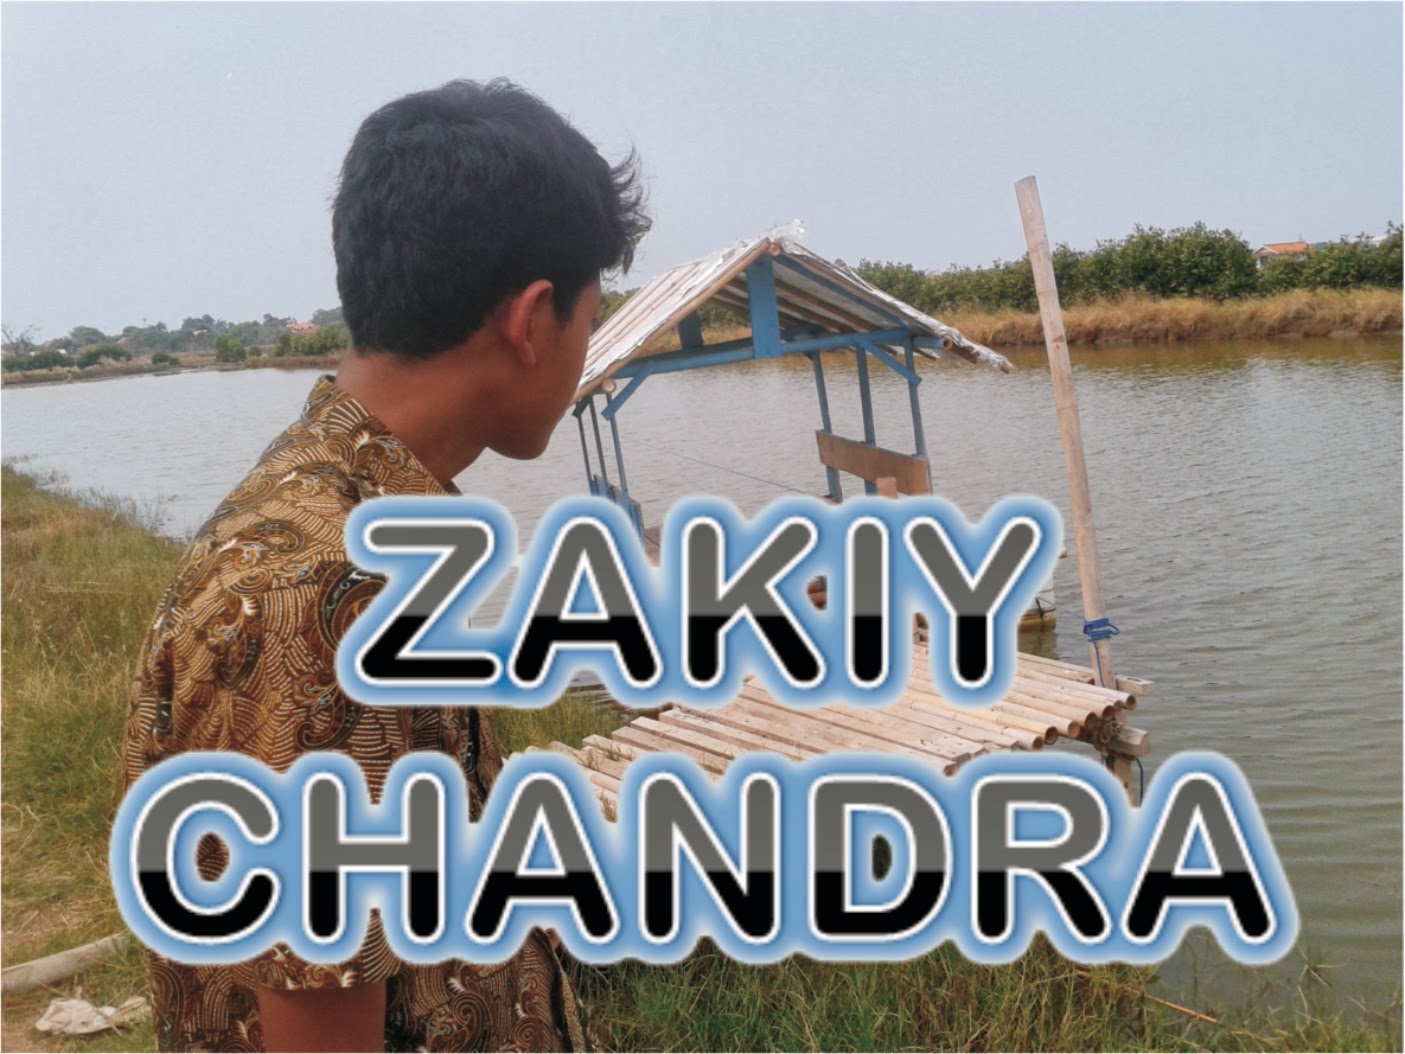 ZakiyChandra